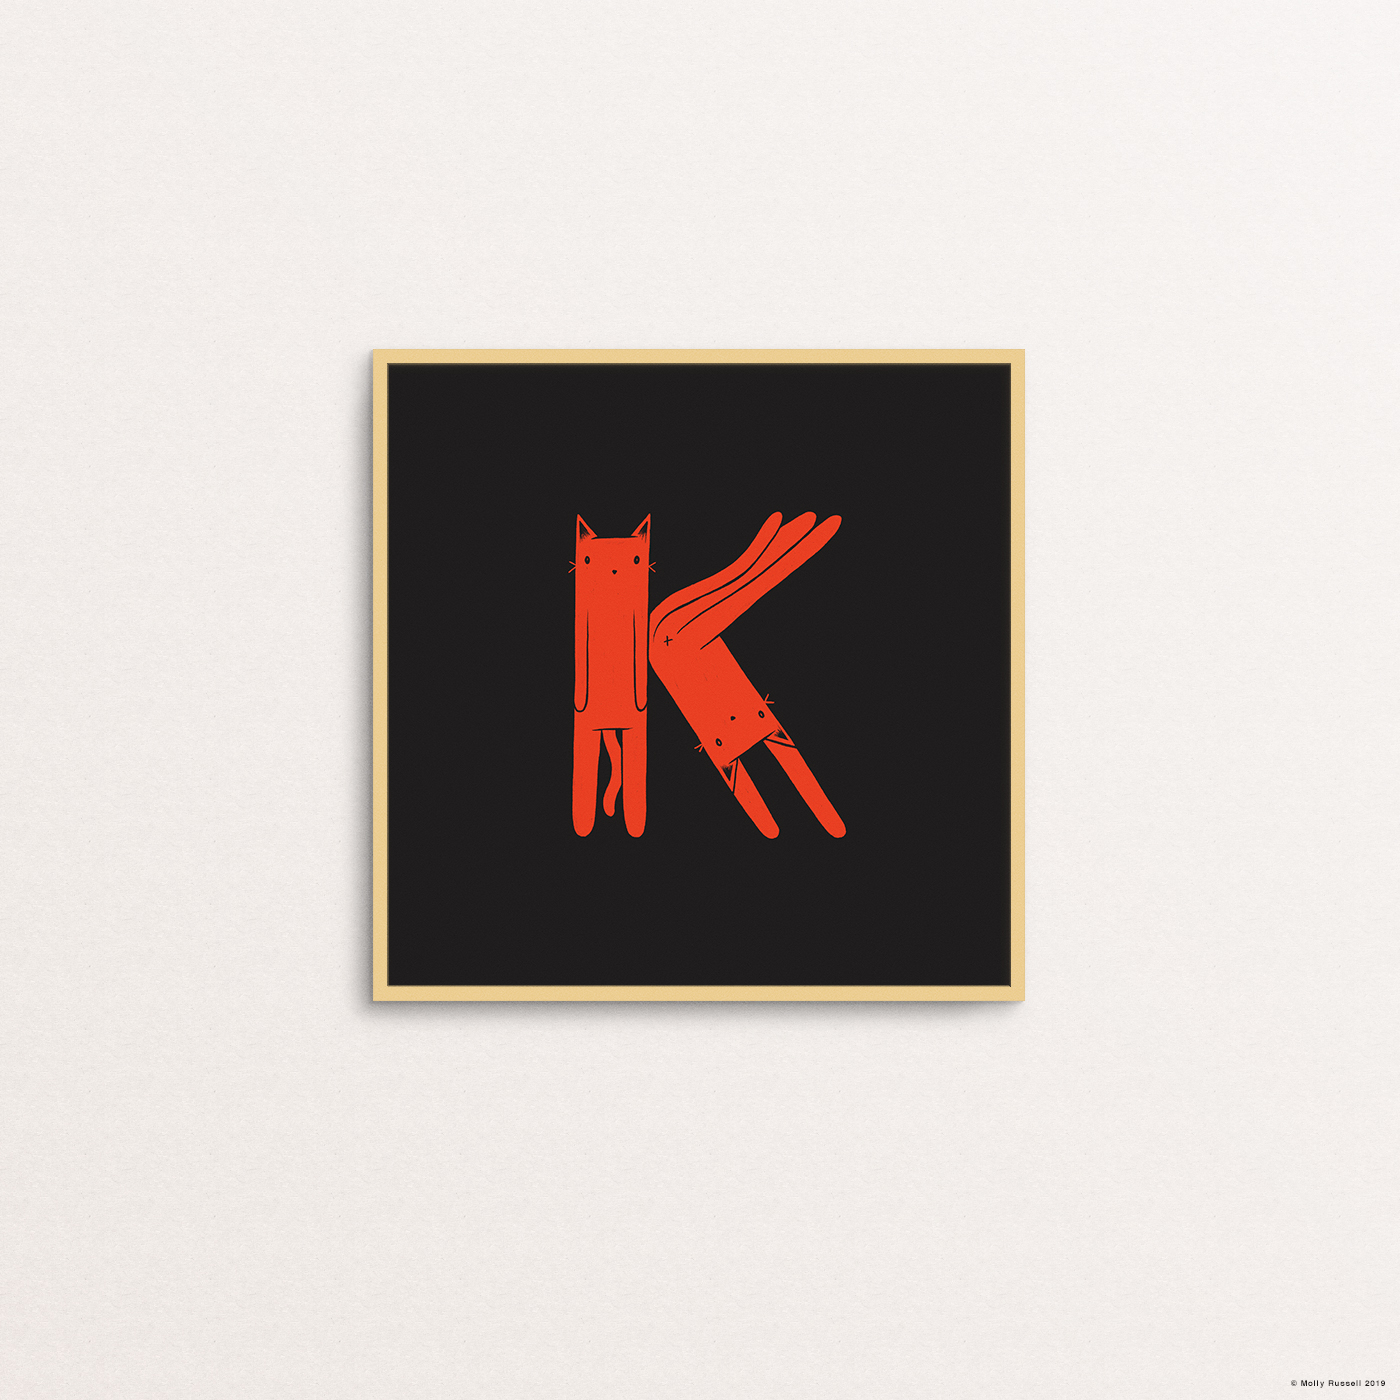 K is for Koko.